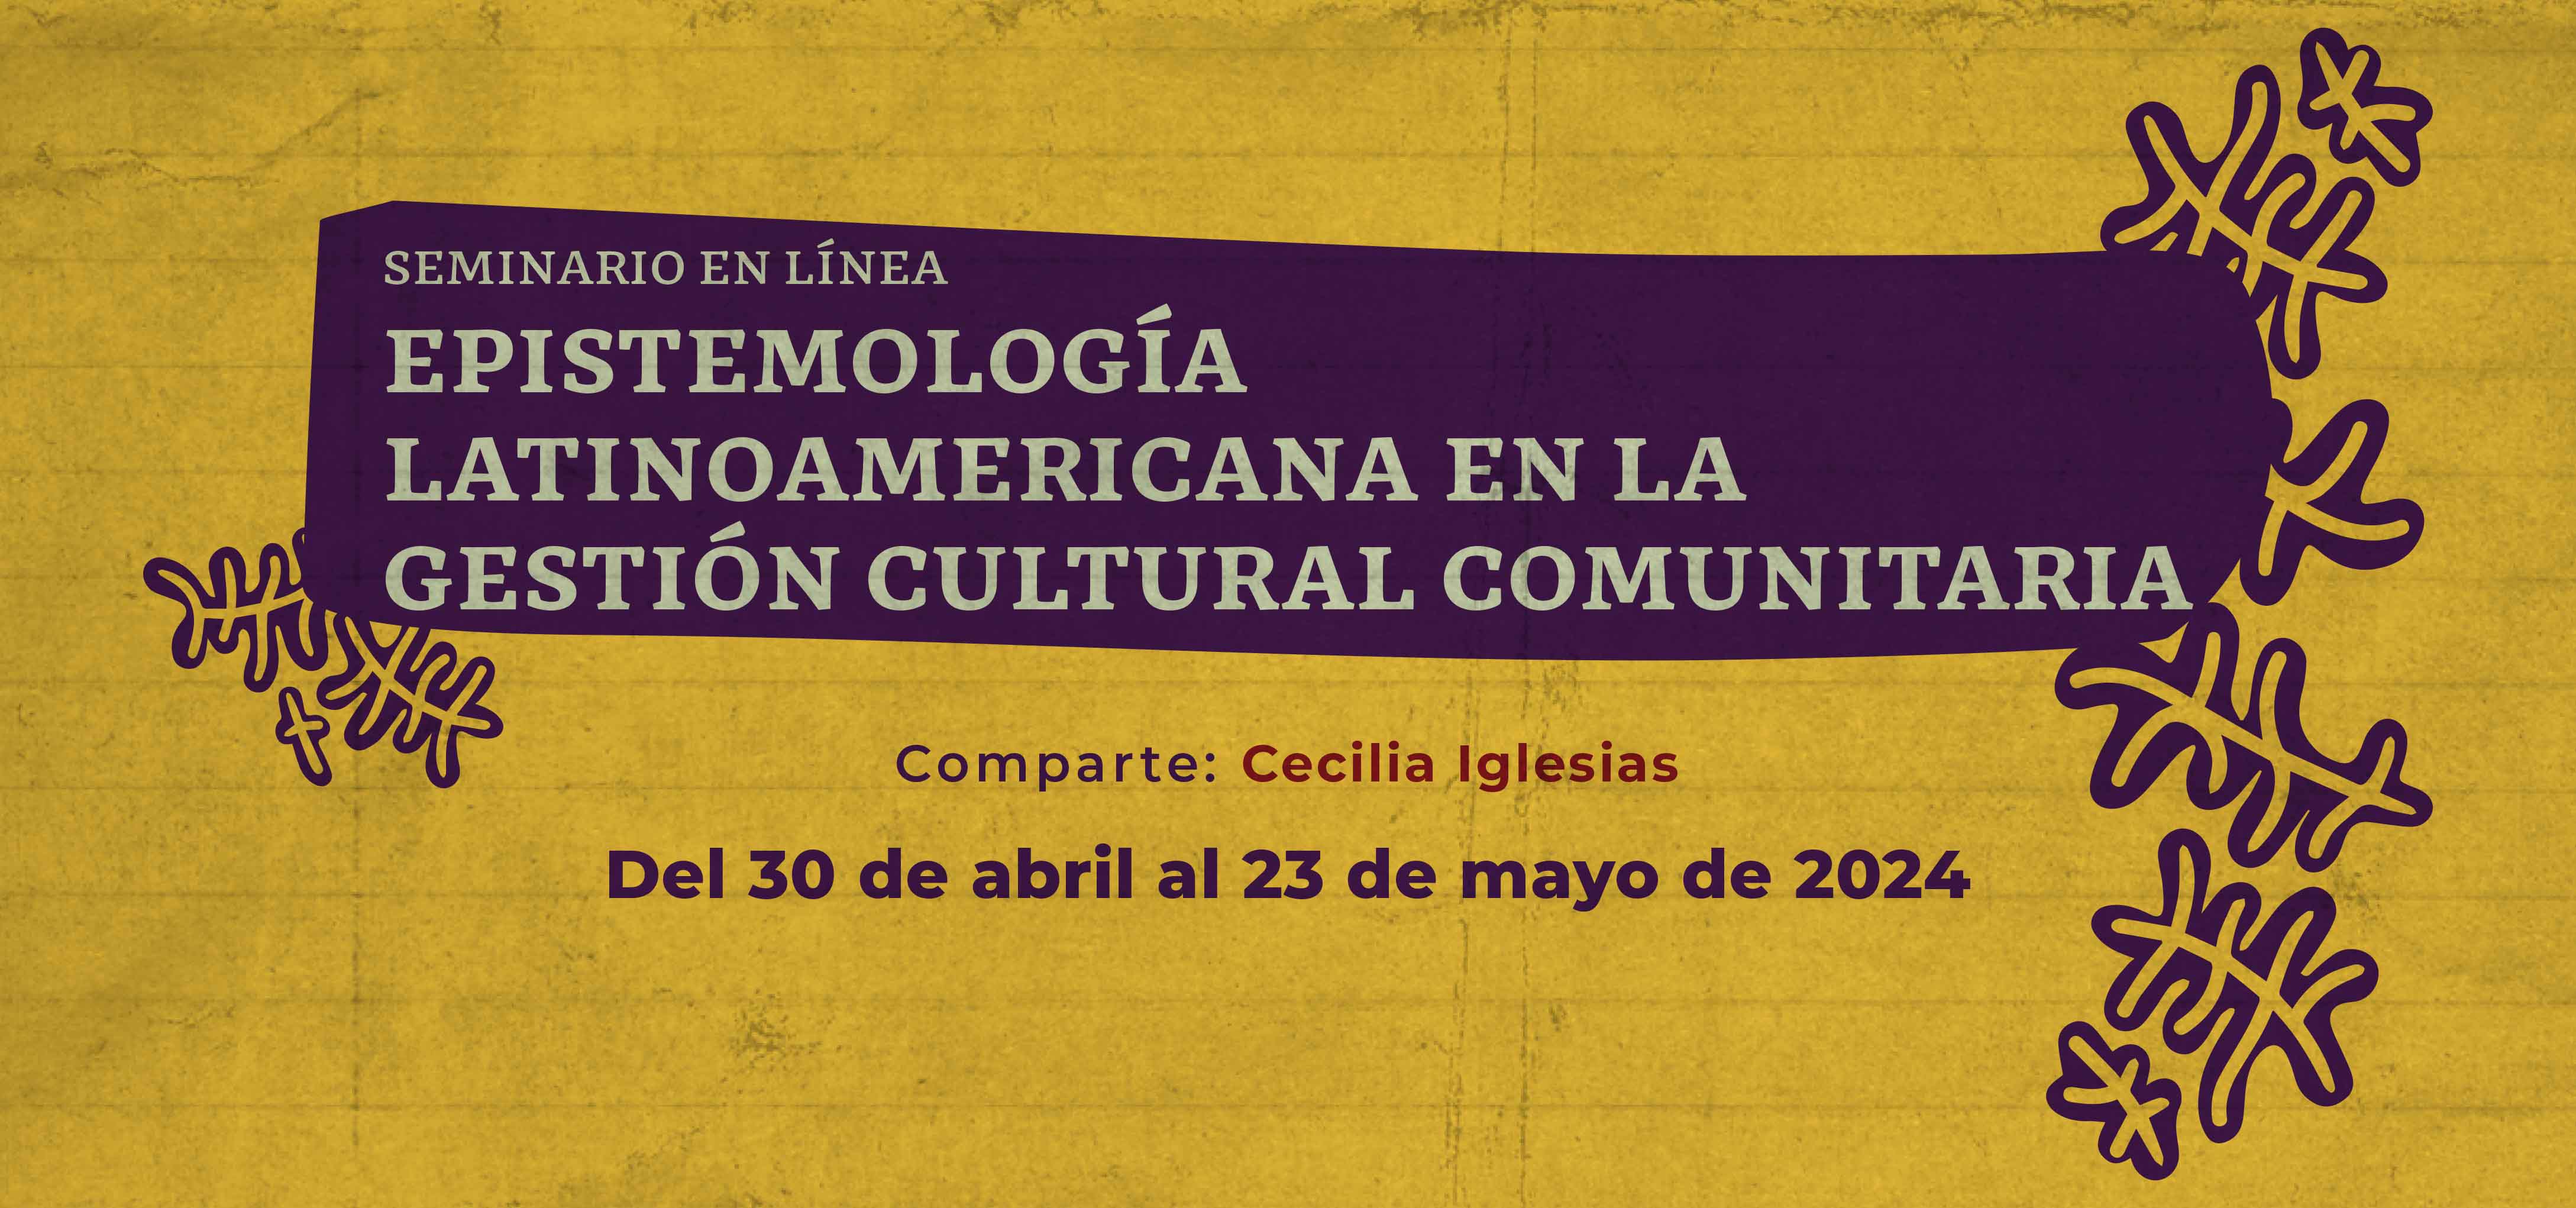 Seminario en línea. Epistemología latinoamericana en la gestión cultural comunitaria